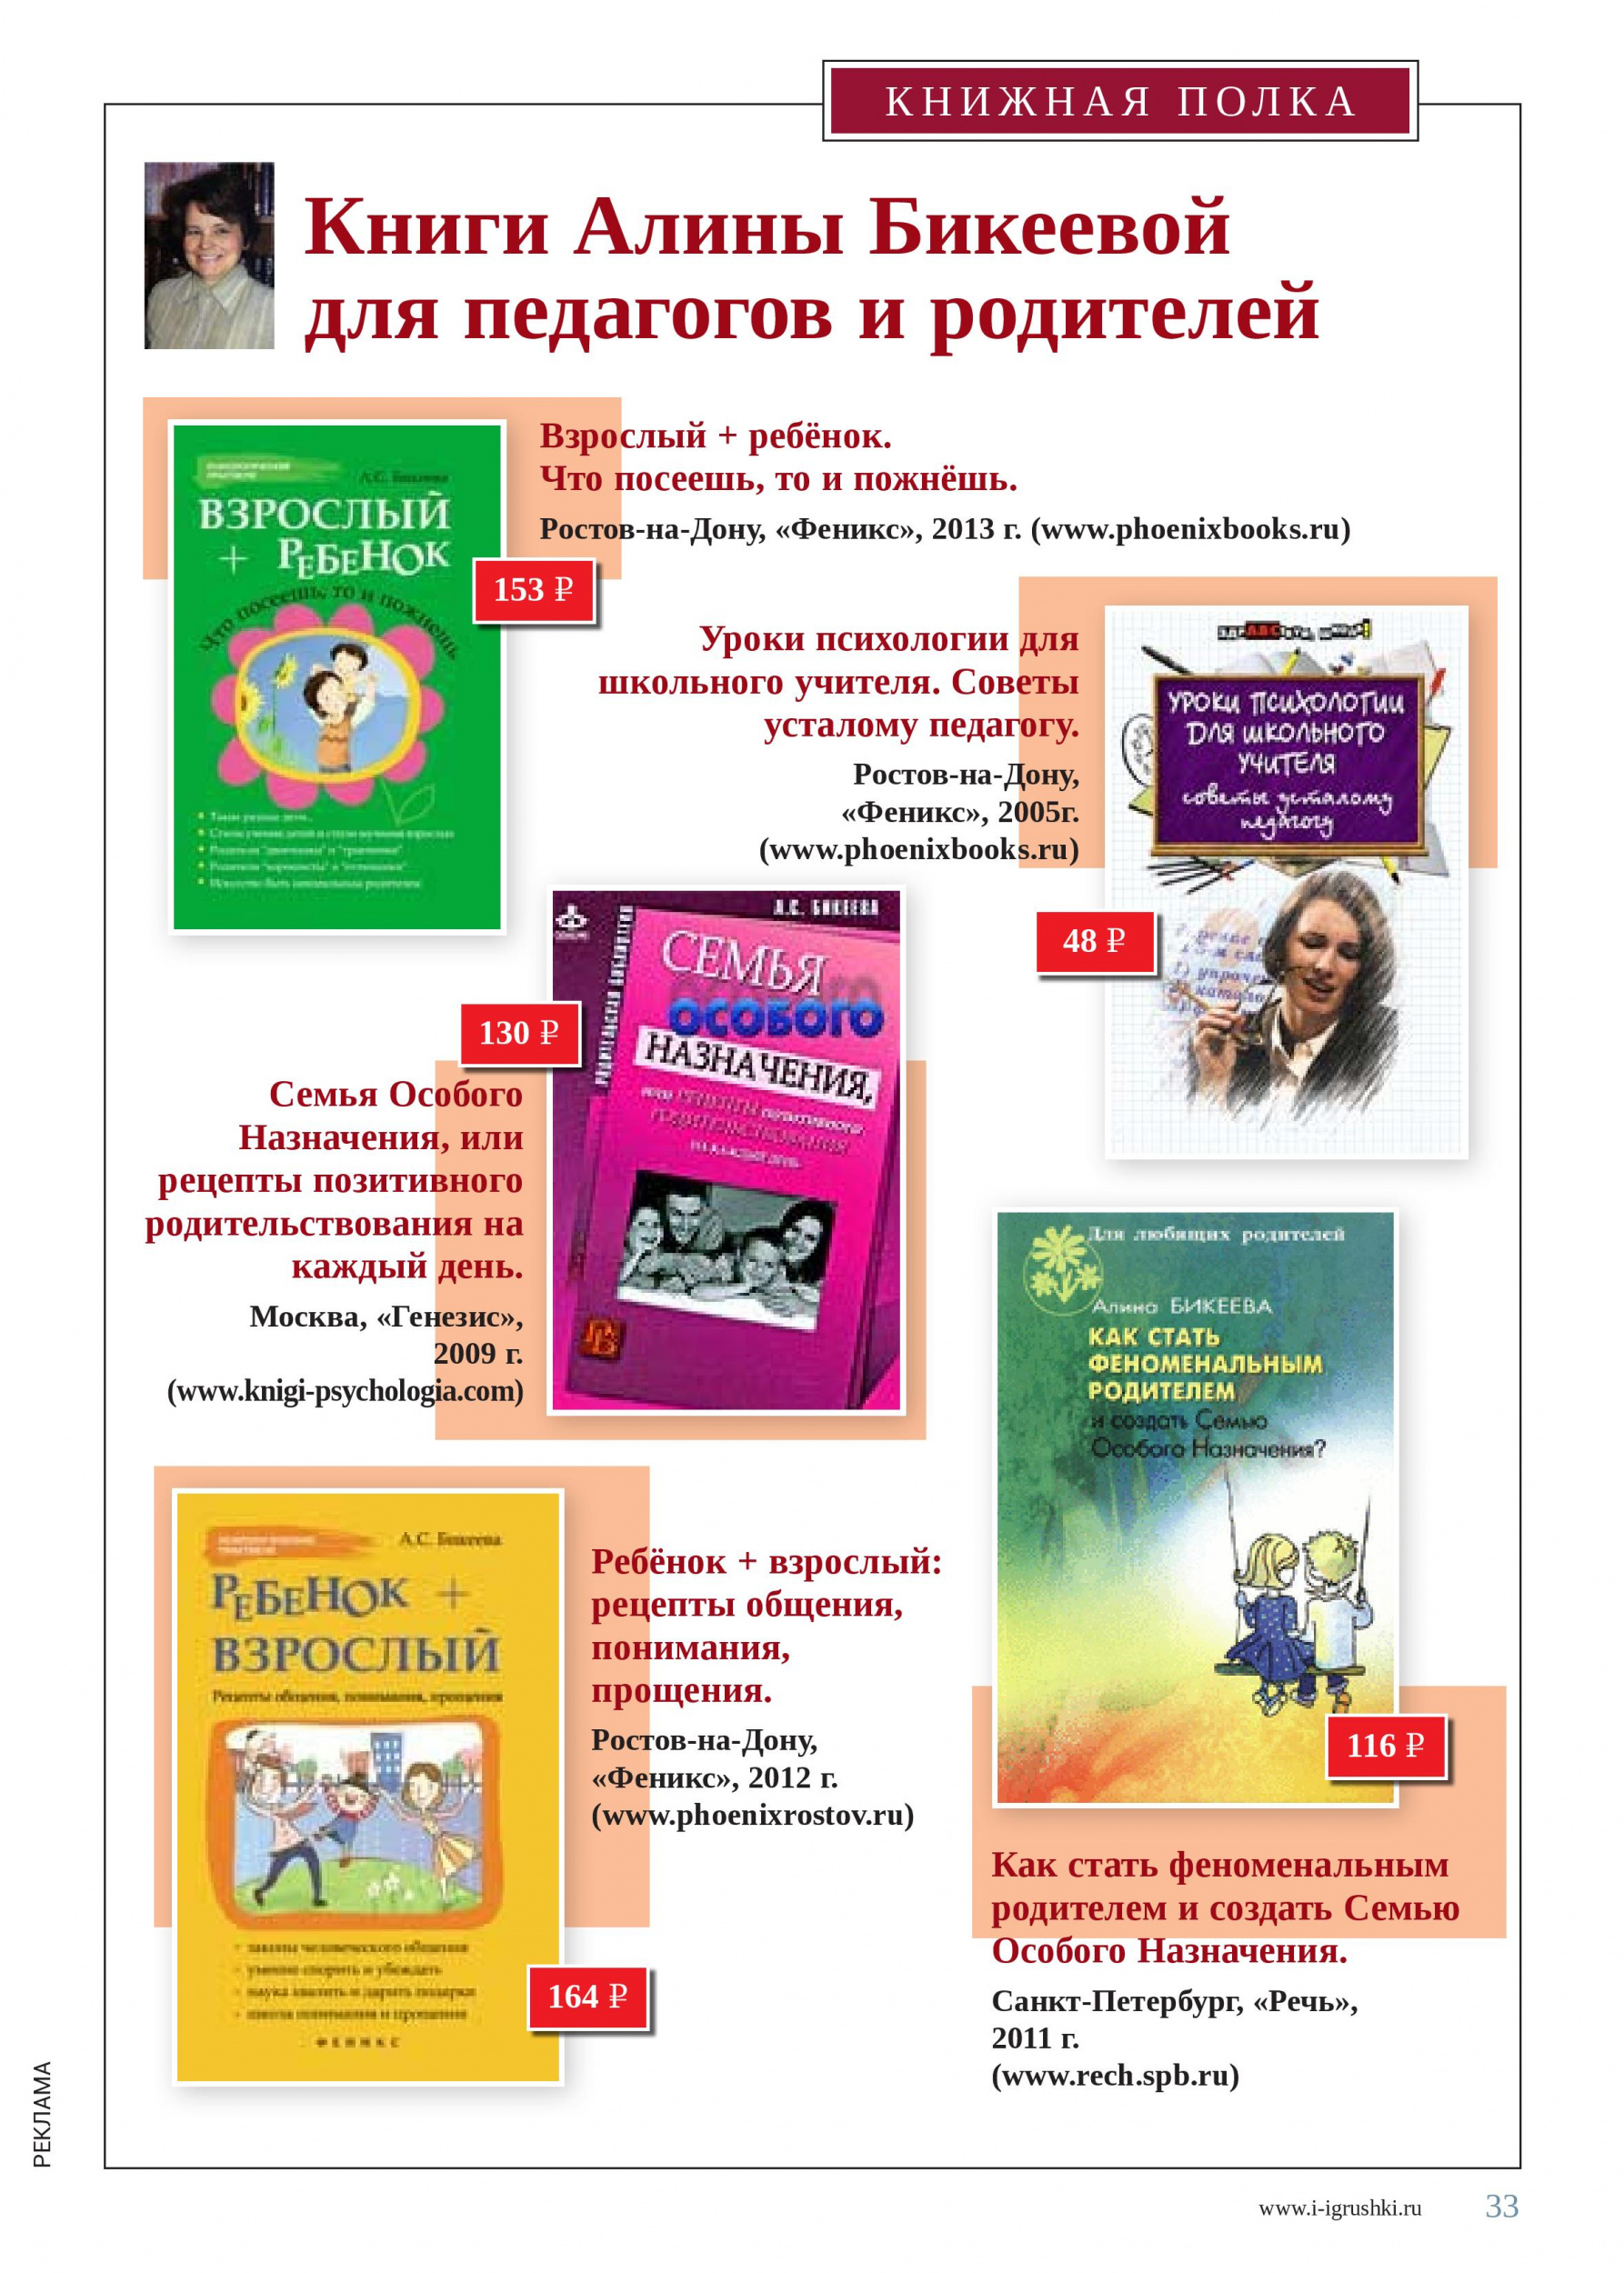 Книги Алины Бикеевой для педагогов и родителей